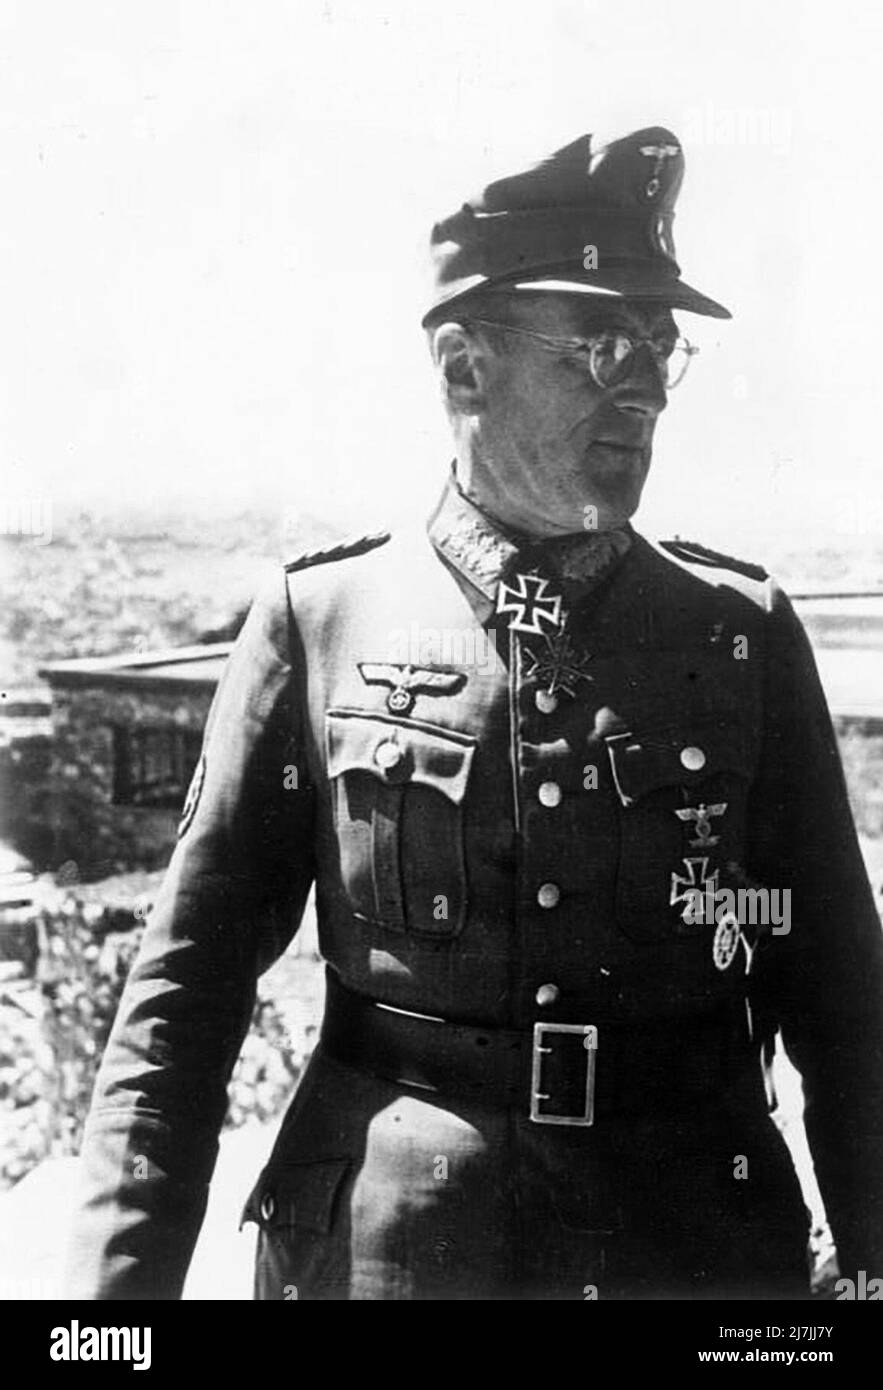 Ferdinand Schörner était un commandant militaire allemand qui occupait le rang de Generalfeldmarschall dans la Wehrmacht de l'Allemagne nazie pendant la Seconde Guerre mondiale Il commande plusieurs groupes de l'armée et est le dernier commandant en chef de l'armée allemande. Banque D'Images